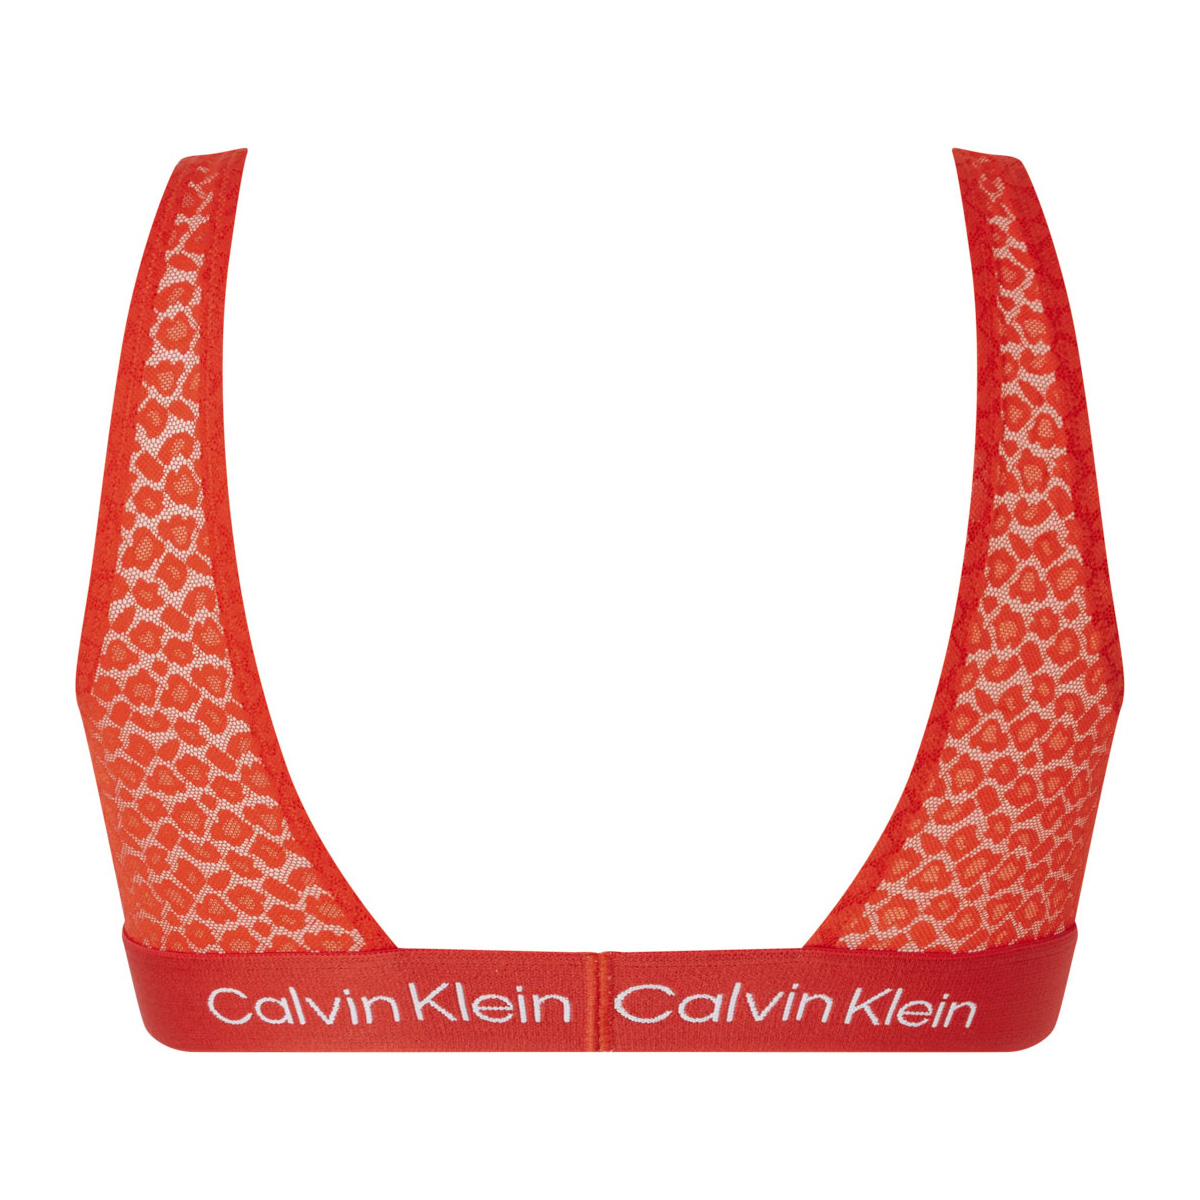 CALVIN KLEIN FASHION CK96 lace bralette